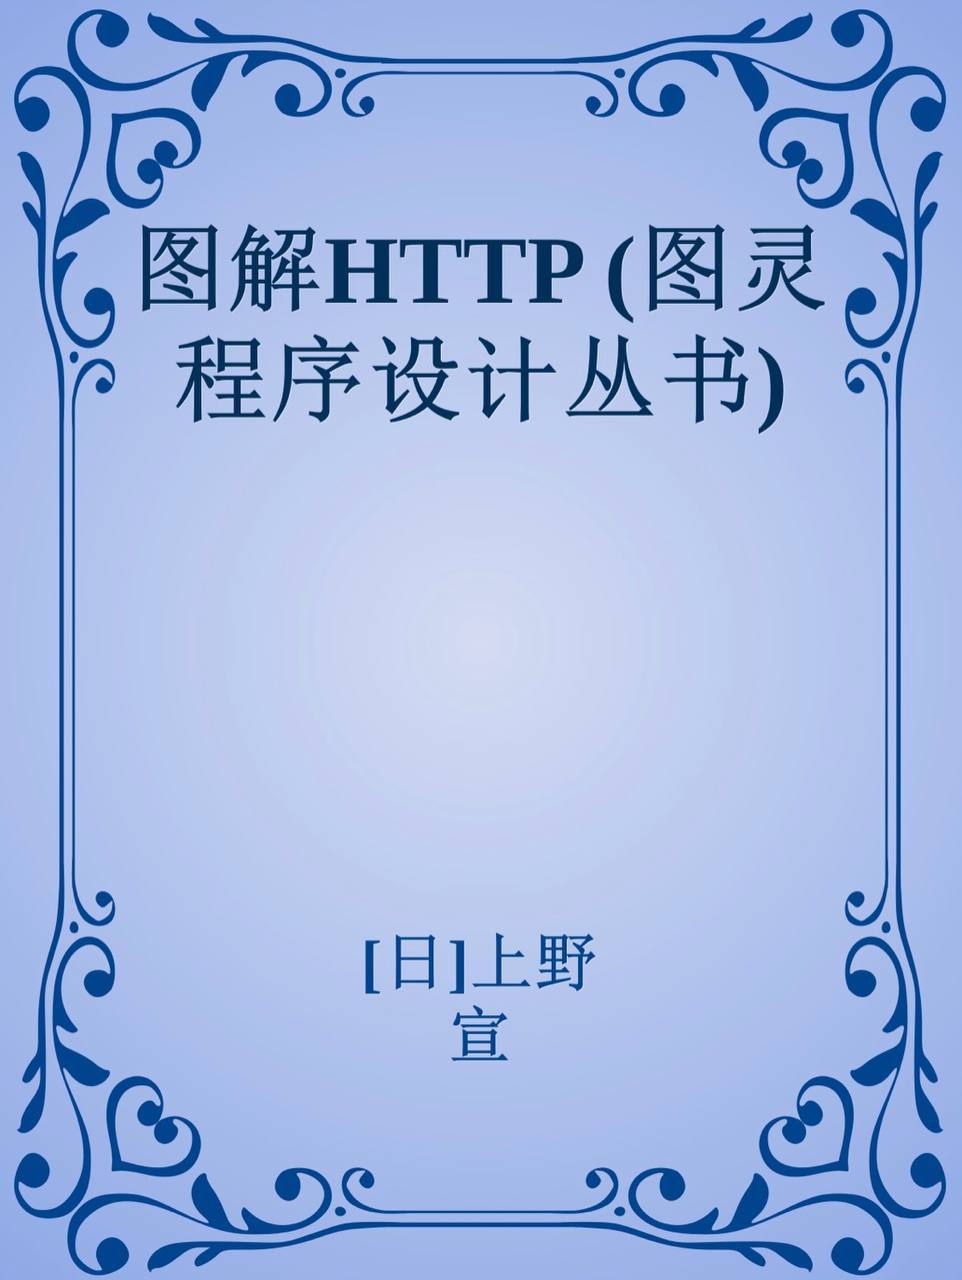 图解HTTP (图灵程序设计丛书) [epub & mobi & PDF 电子书] 电子书 第1张